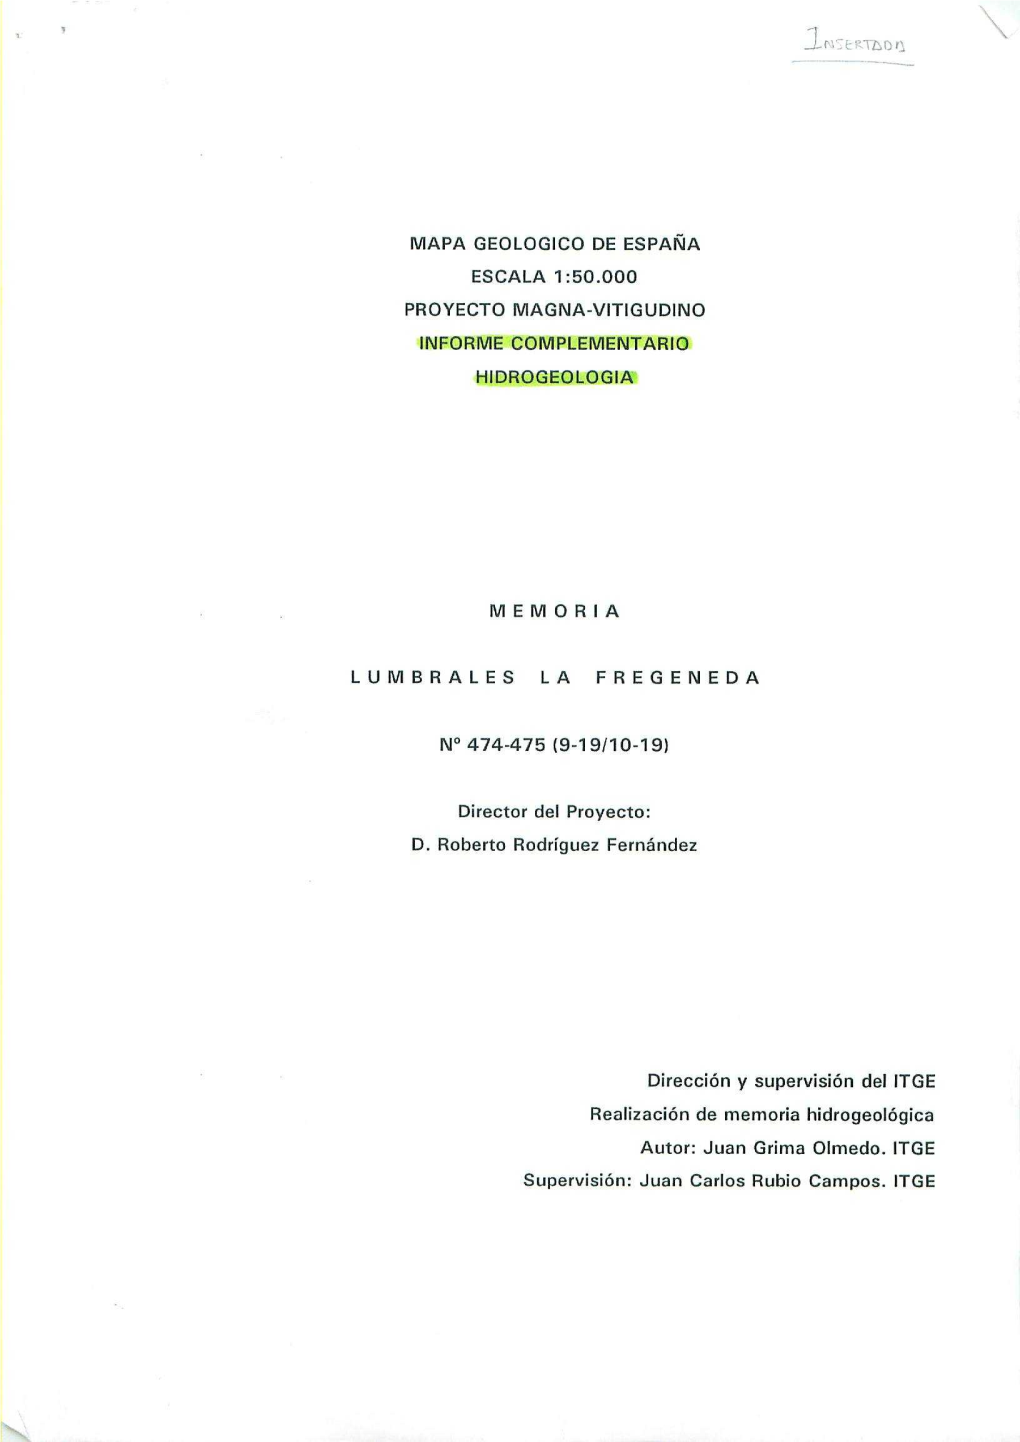 Escala 1 : 50.000 Proyecto Magna - Vitigudino Informe Complementario Hidrogeologia